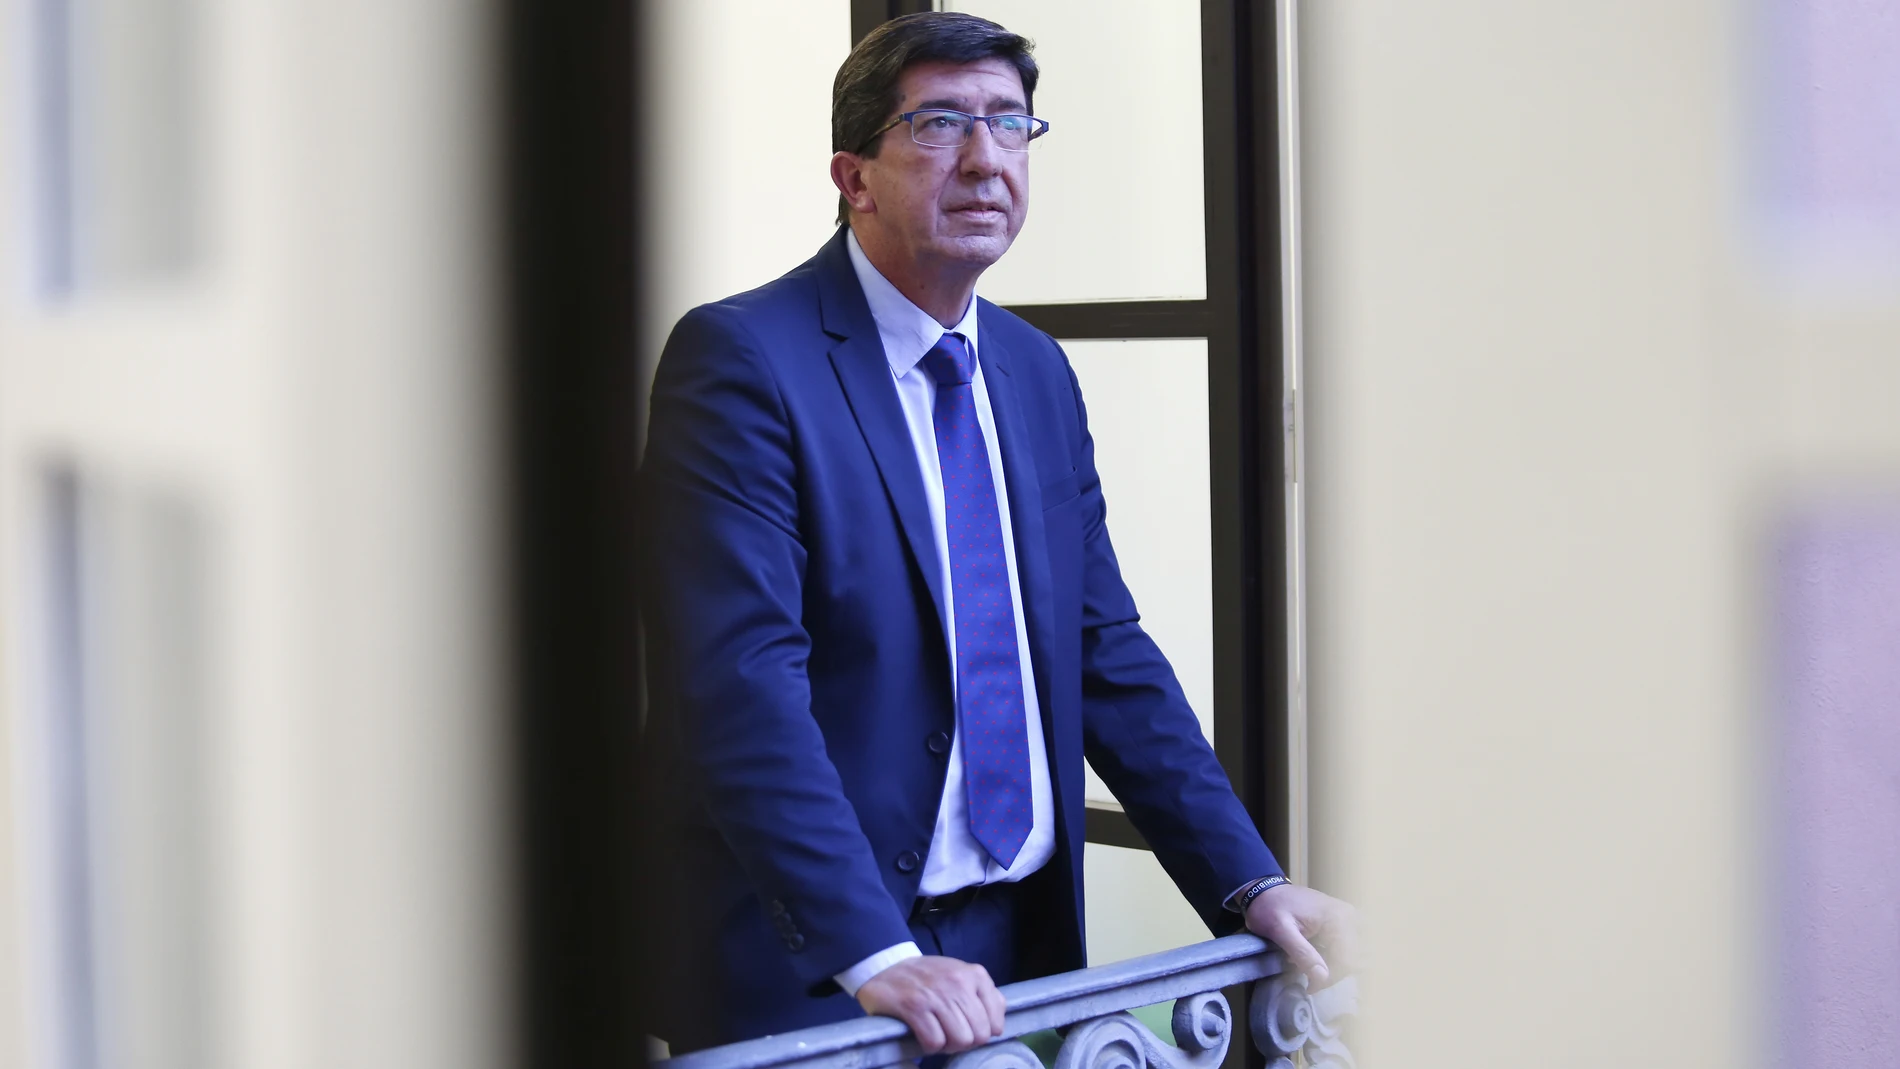 El vicepresidente de la Junta de Andalucía, Juan Marín, en uno de los balcones interiores de San Telmo